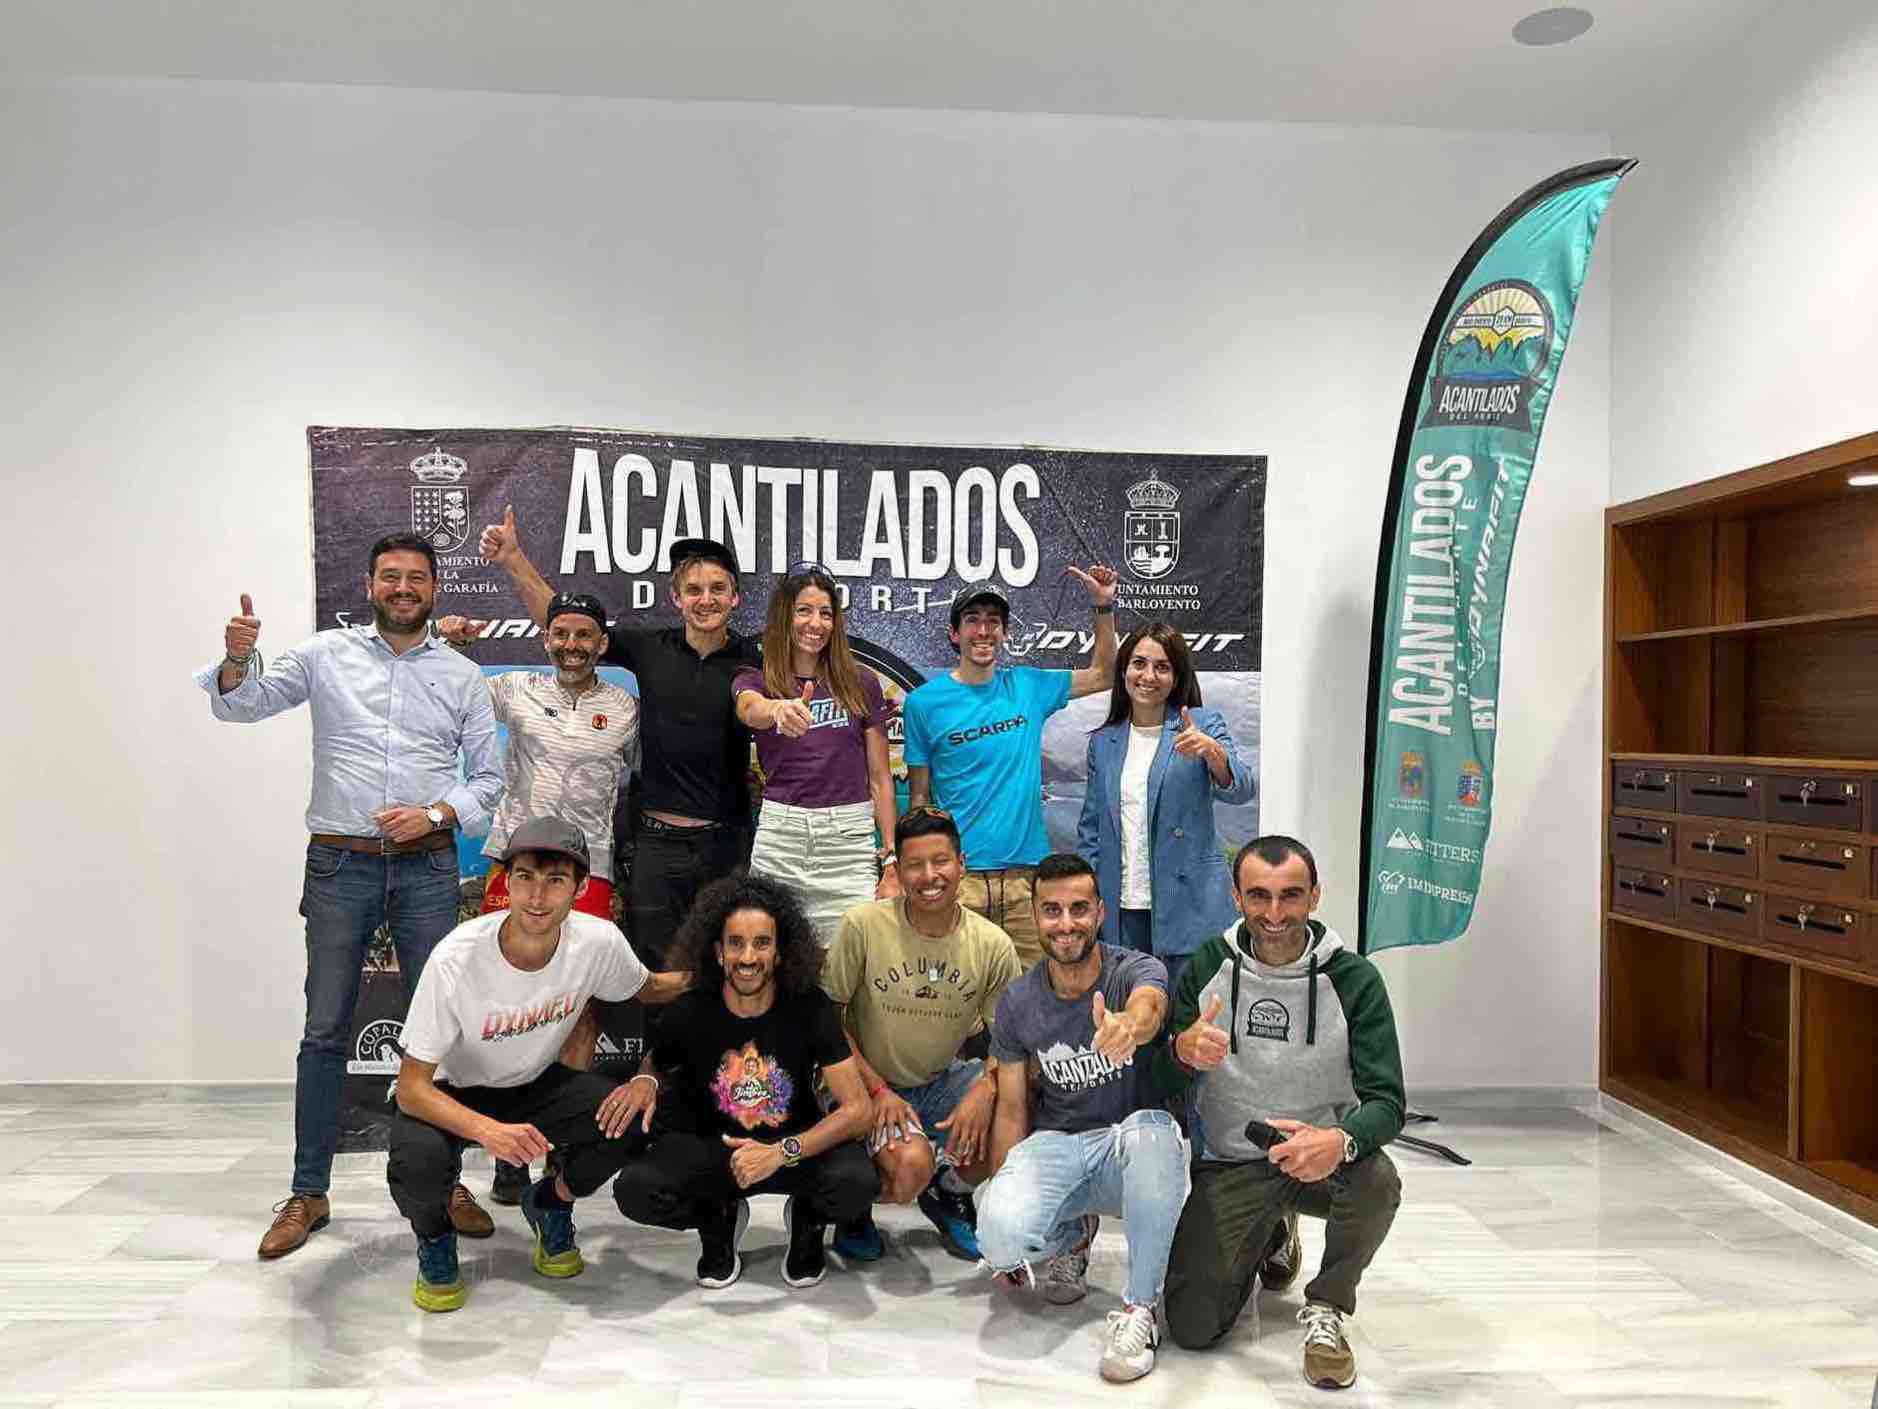 El Cabildo respalda una nueva edición de la prueba de trail Acantilados del Norte